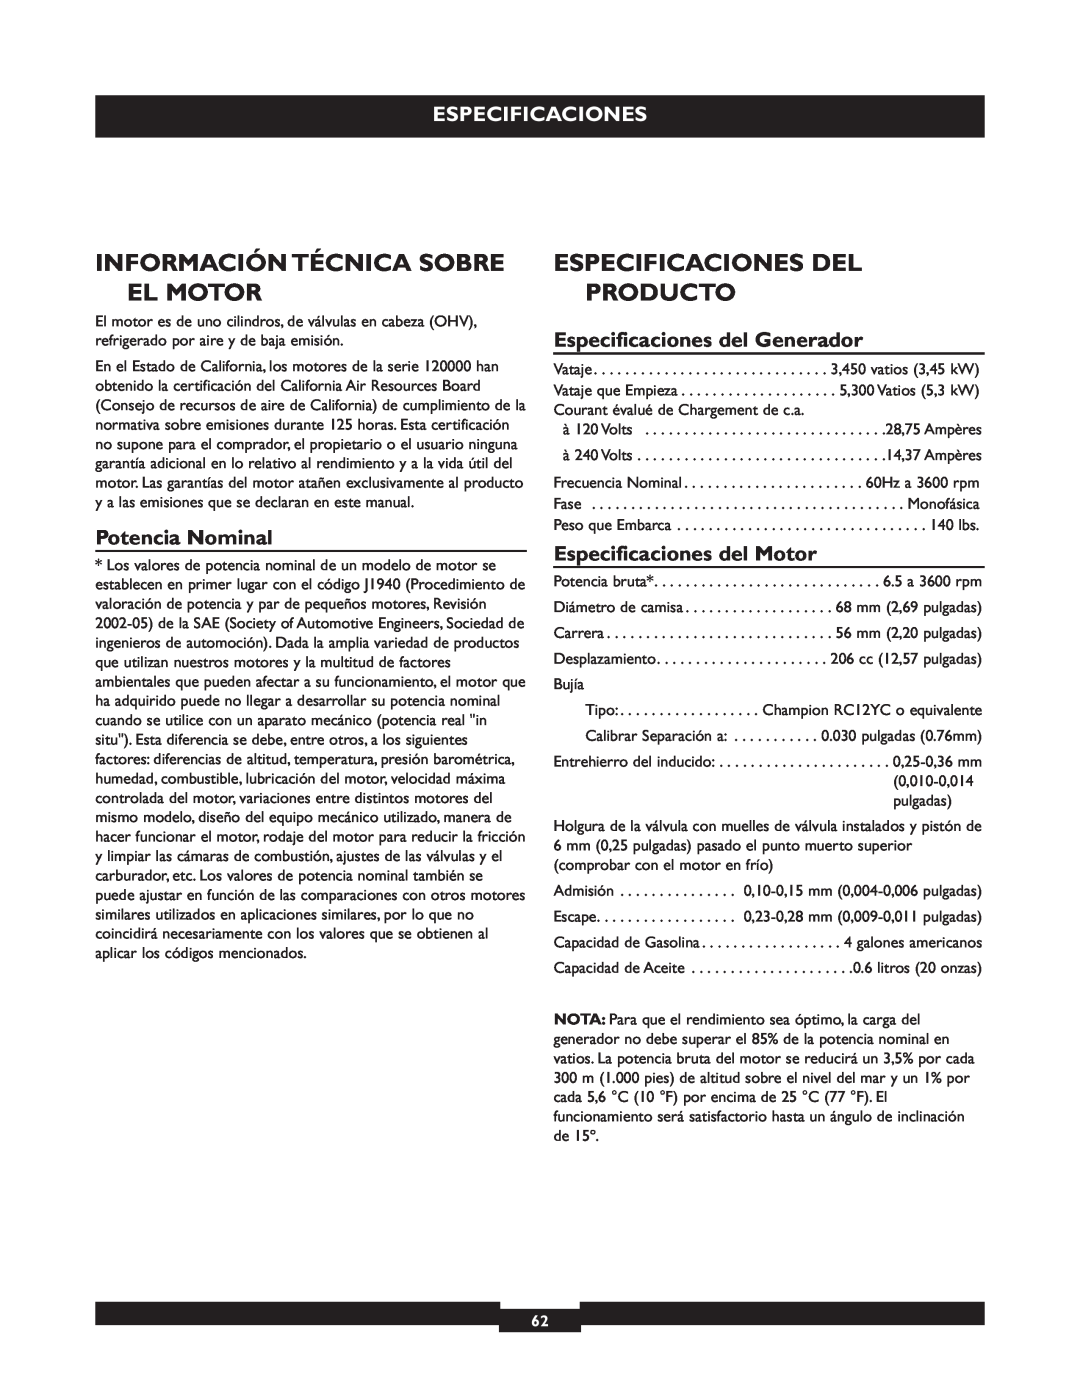 Briggs & Stratton 30236 Información Técnica Sobre El Motor, Especificaciones Del Producto, Potencia Nominal 